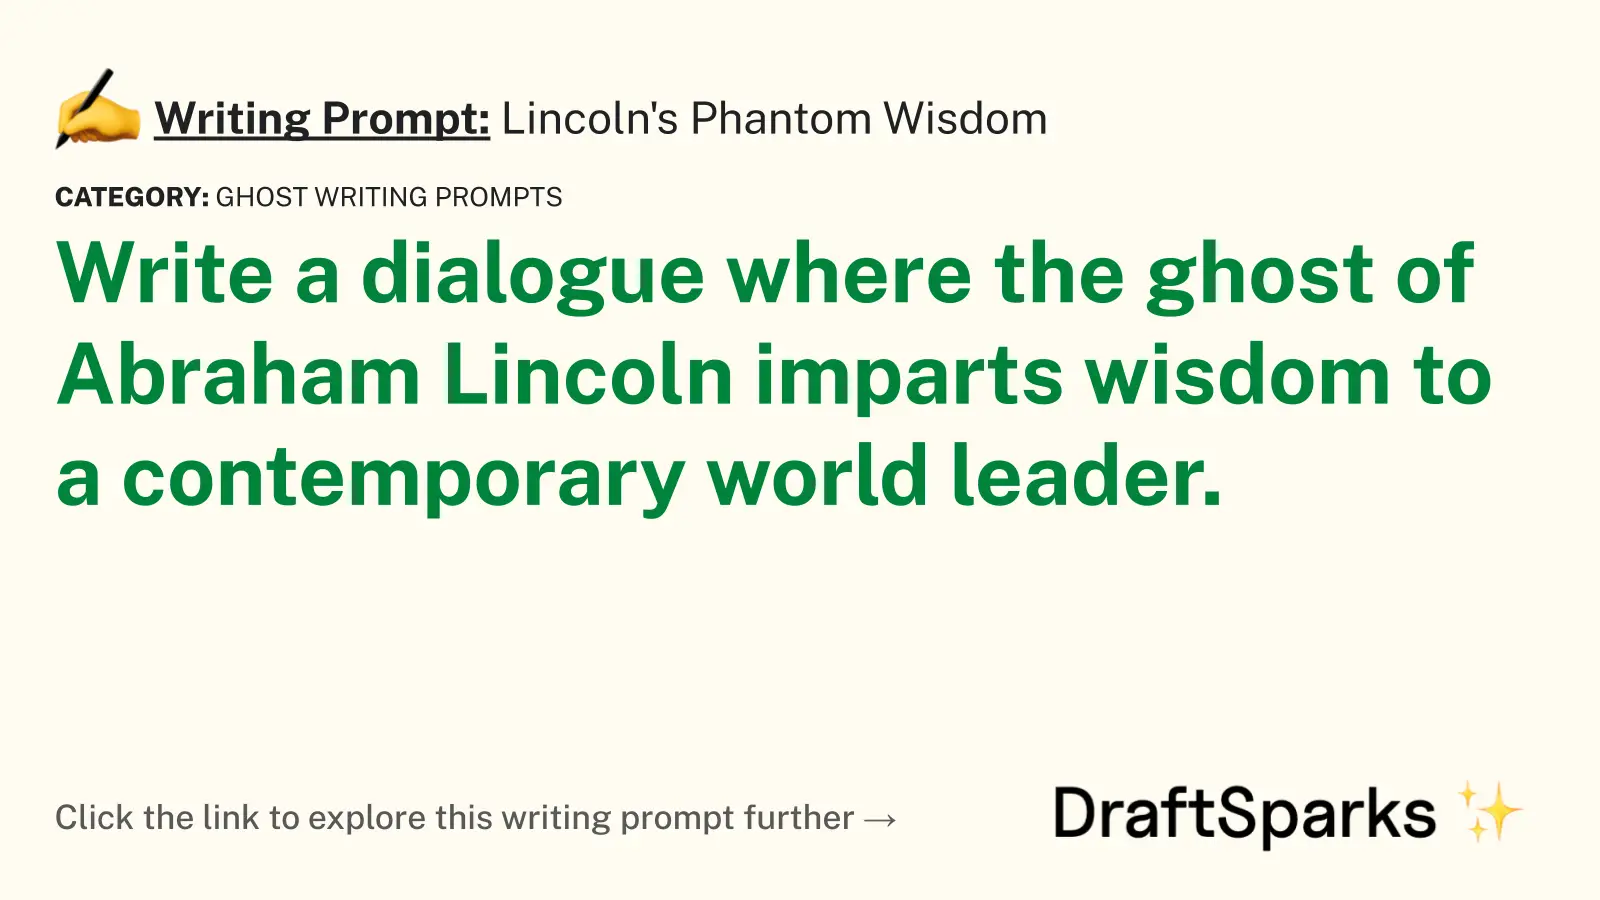 Lincoln’s Phantom Wisdom